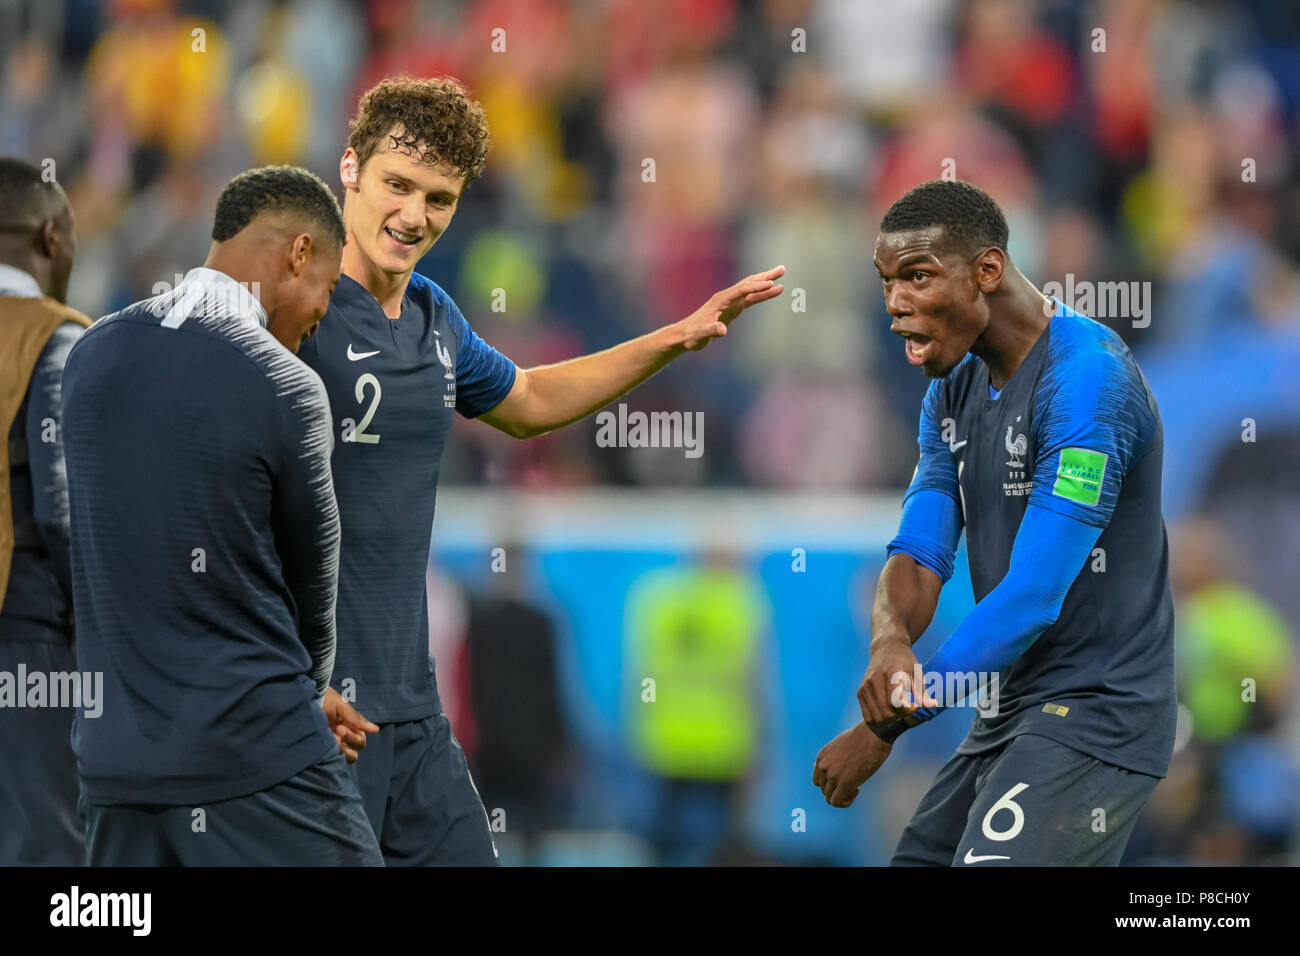 10 juillet 2018, St.. Paul Pogba de France pour célébrer la victoire à St Petersbourg stade lors de la demi-finale entre la France et la Belgique au cours de la Coupe du Monde 2018. Ulrik Pedersen/CSM/Alamy Live News Banque D'Images